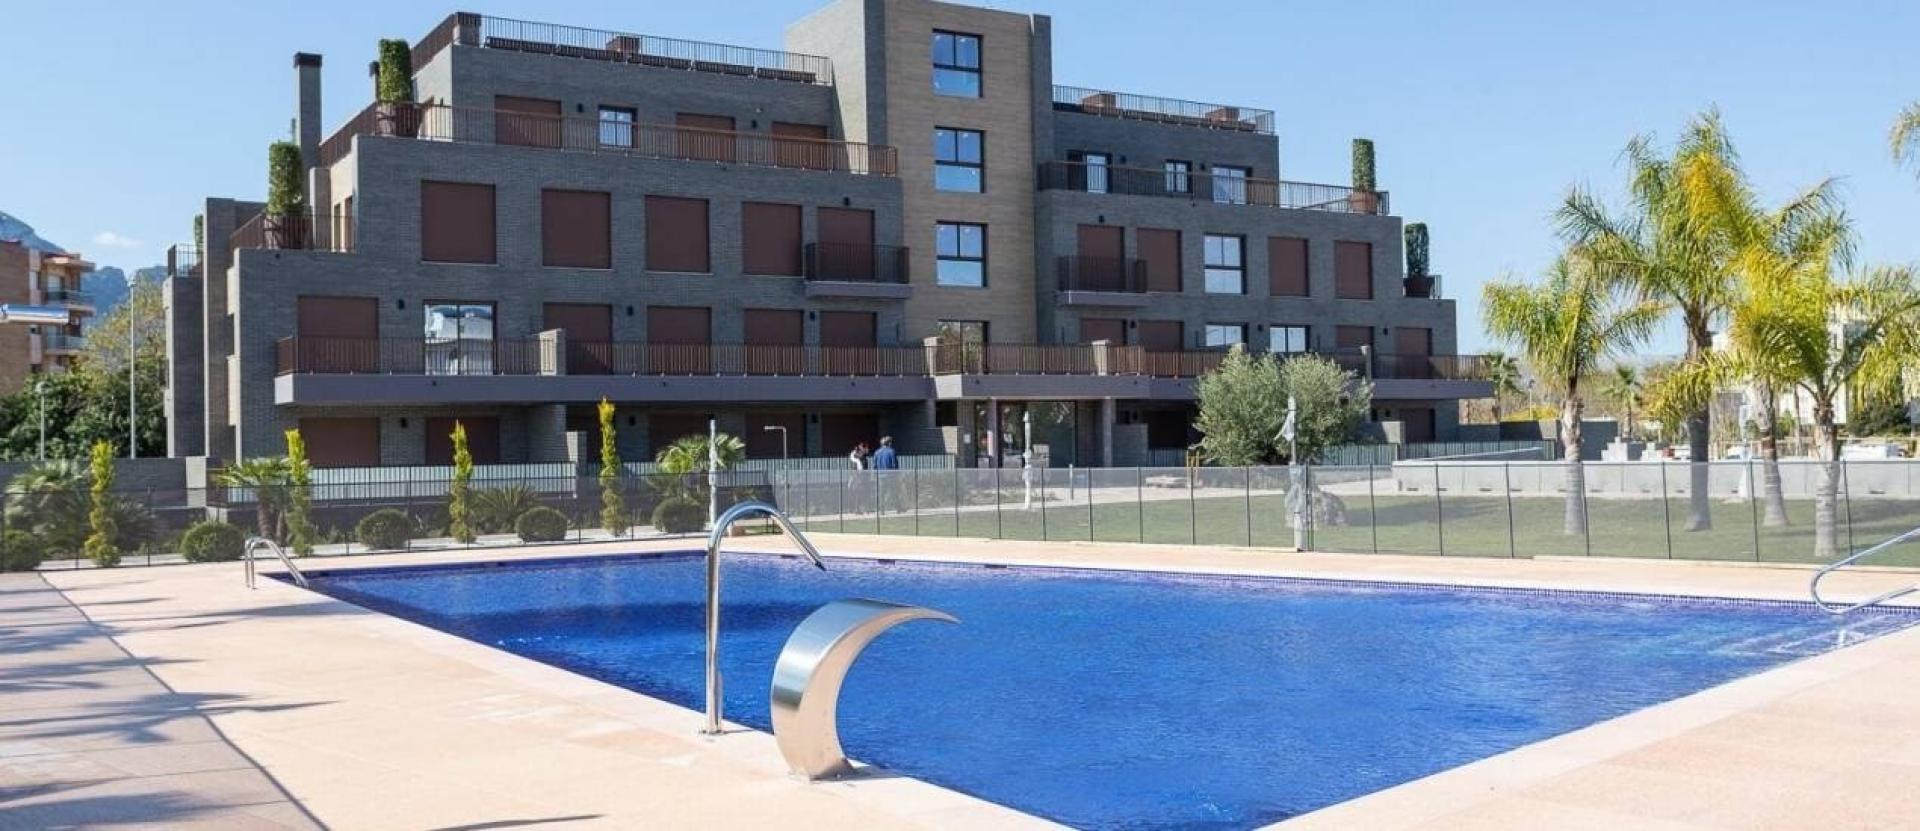 1 slaapkamer Appartement met tuin in Denia - Nieuwbouw in Medvilla Spanje